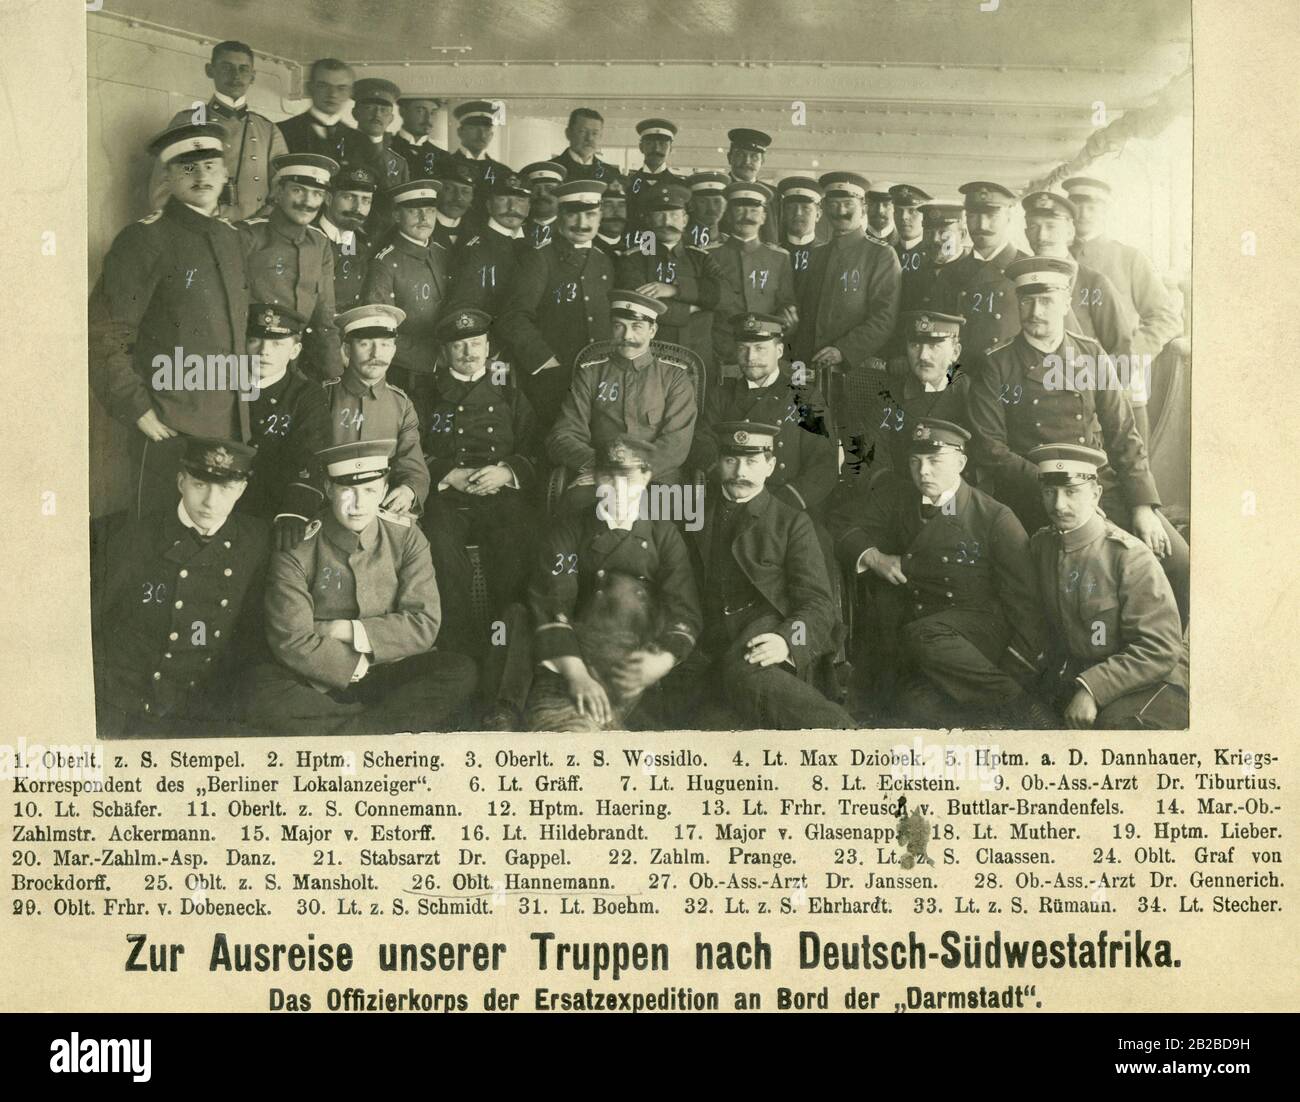 Das Offizierskorps der Ersatzexpedition an Bord der "Charmstatt" bei der Abreise nach Südwestafrika. Hier führten deutsche Truppen einen Krieg gegen die indigene Revolte Hereros. Stockfoto